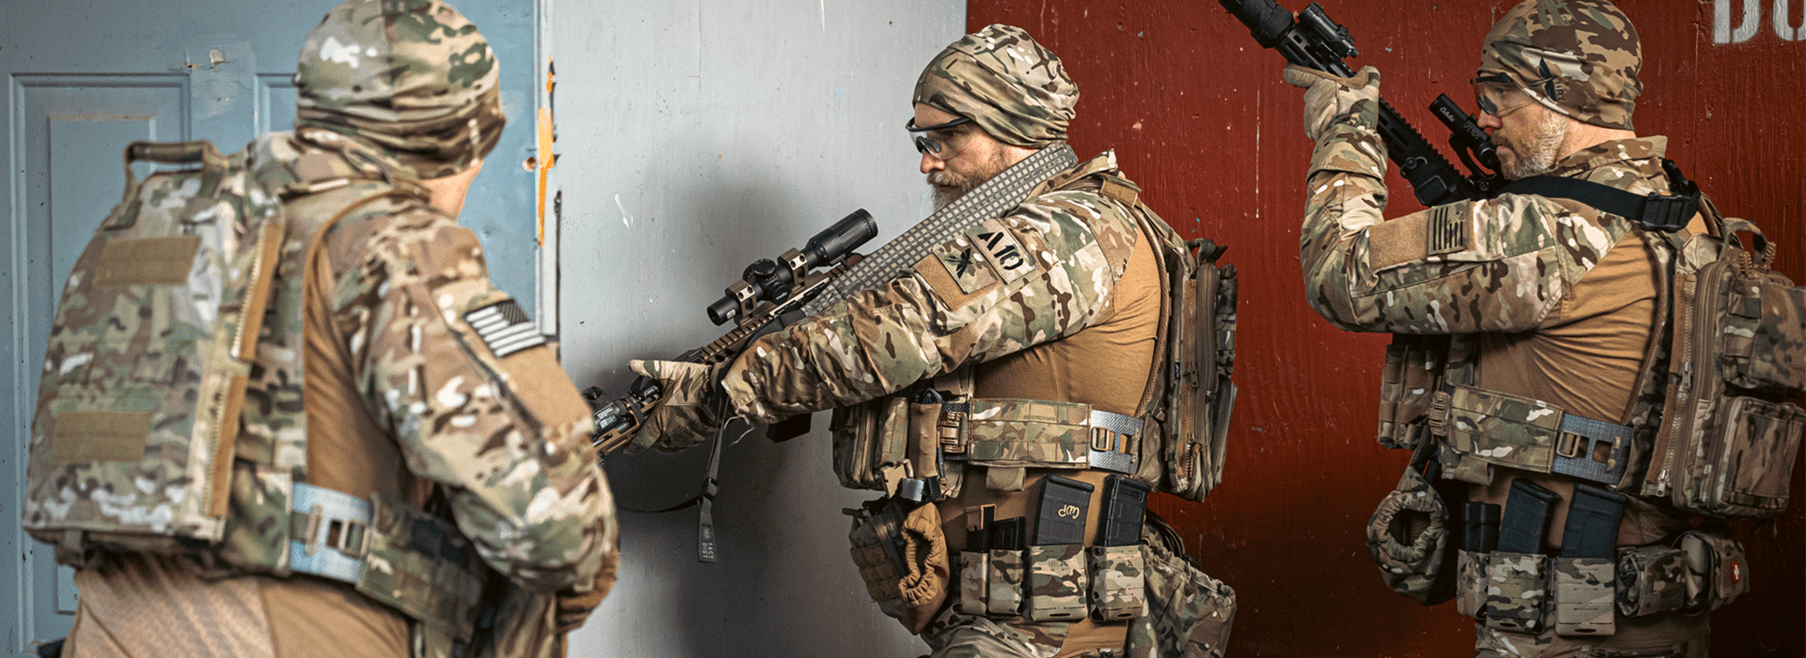 A Basic Guide to First Line Weapon Belt Setups - HRT Tactical Gear